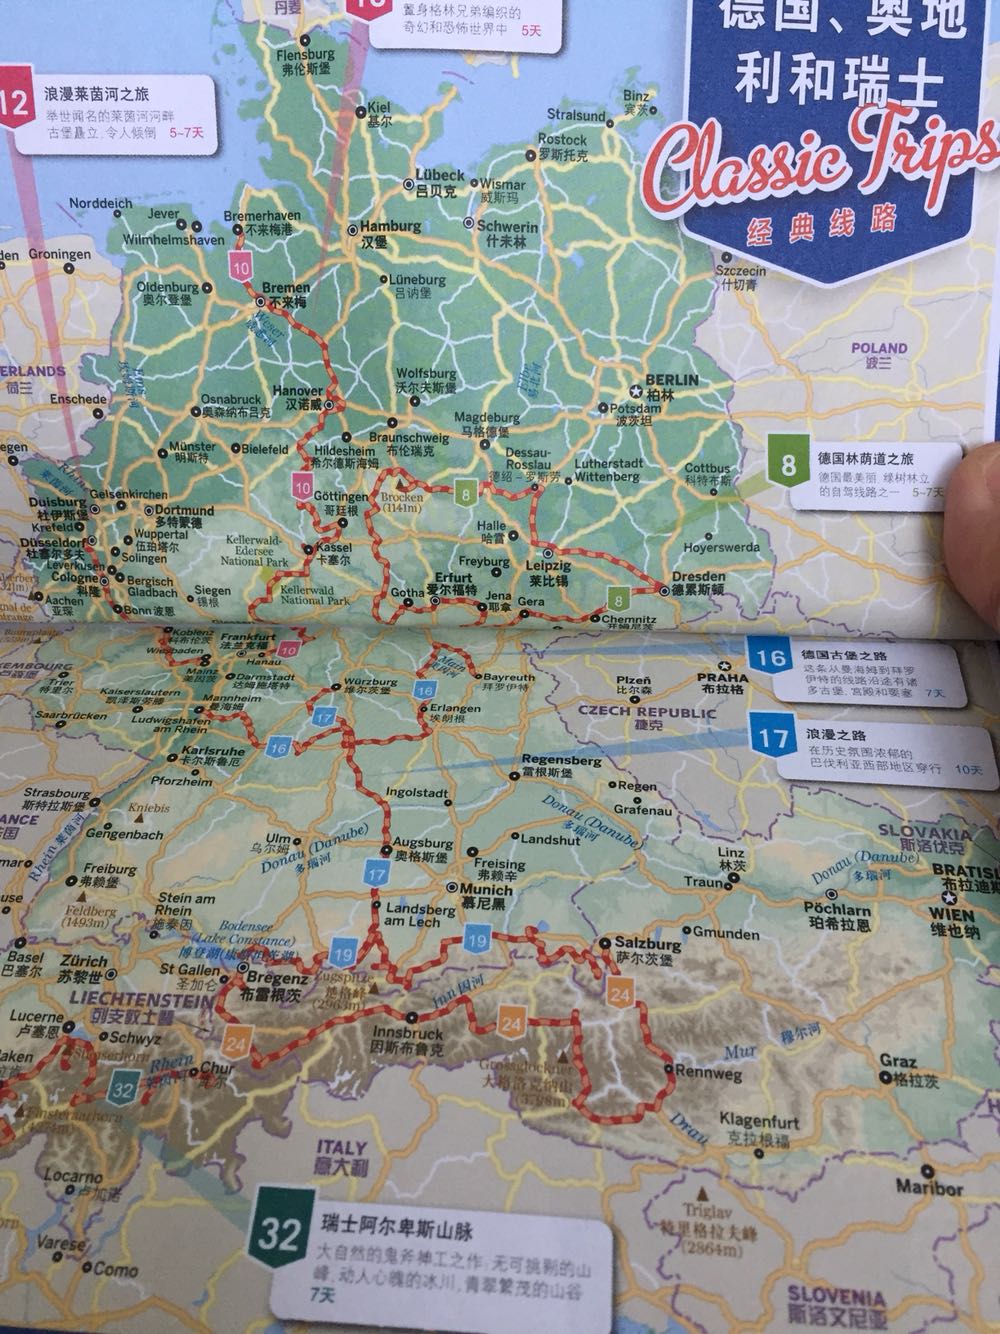 图文并茂 言之有物 非常好的自驾游路书 实用的地图 详细的指引及行家的建议 有助于你完成自己的完美的德奥自驾之旅